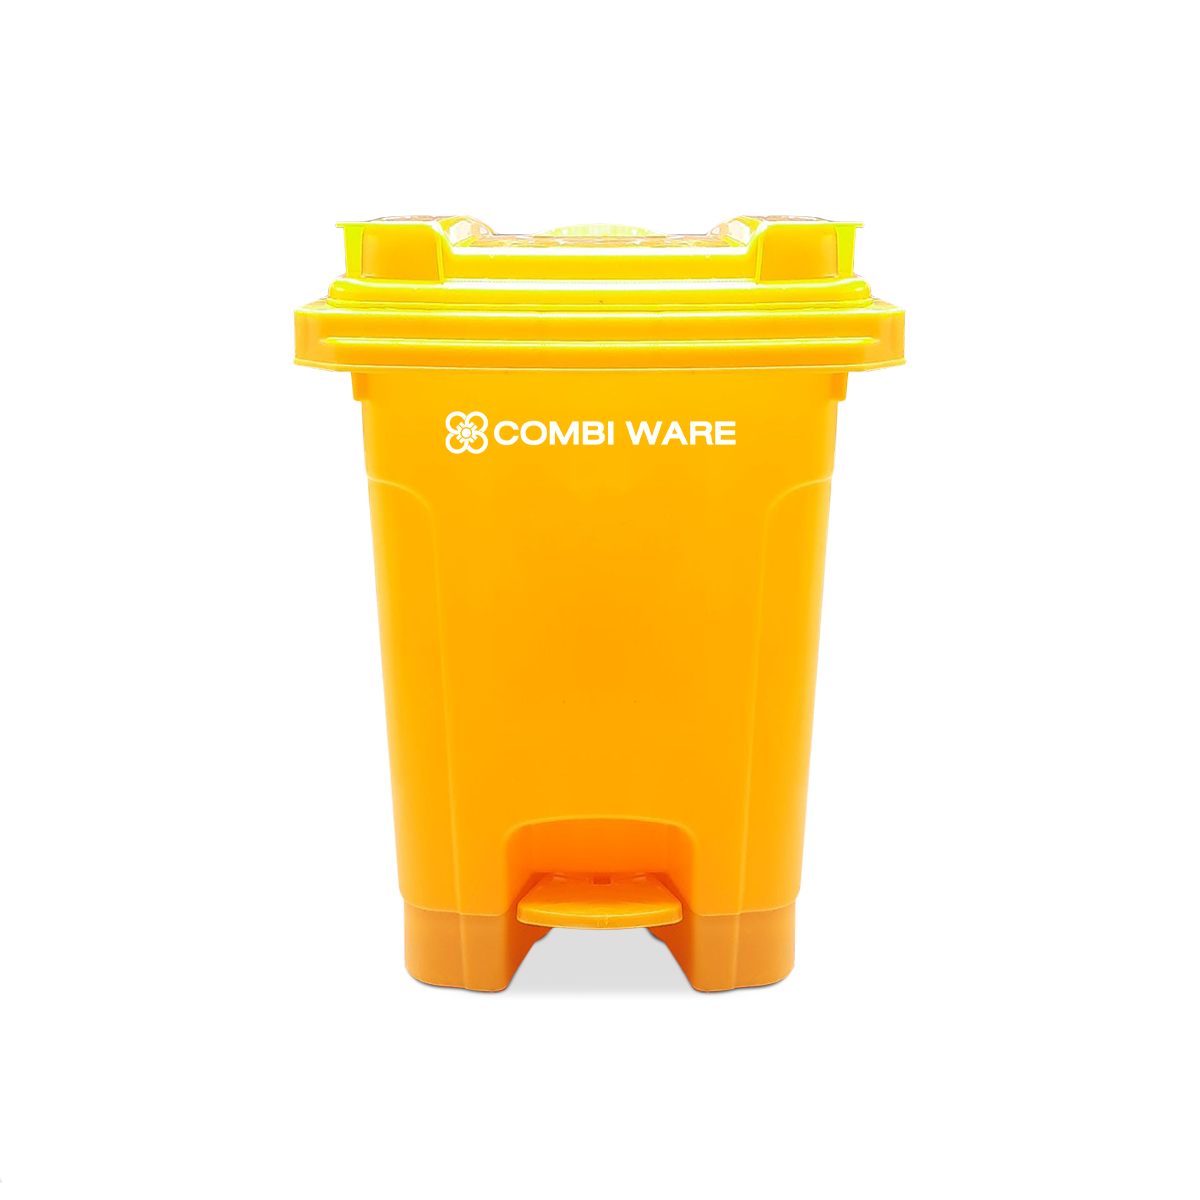 ถังขยะพลาสติก ขนาด 60 ลิตร แบบมีเท้าเหยียบ สีเหลือง (*เกรดบี-มีตำหนิ ไม่กระทบกับการใช้งาน* ซื้อแล้วไม่รับเปลี่ยนคืน)